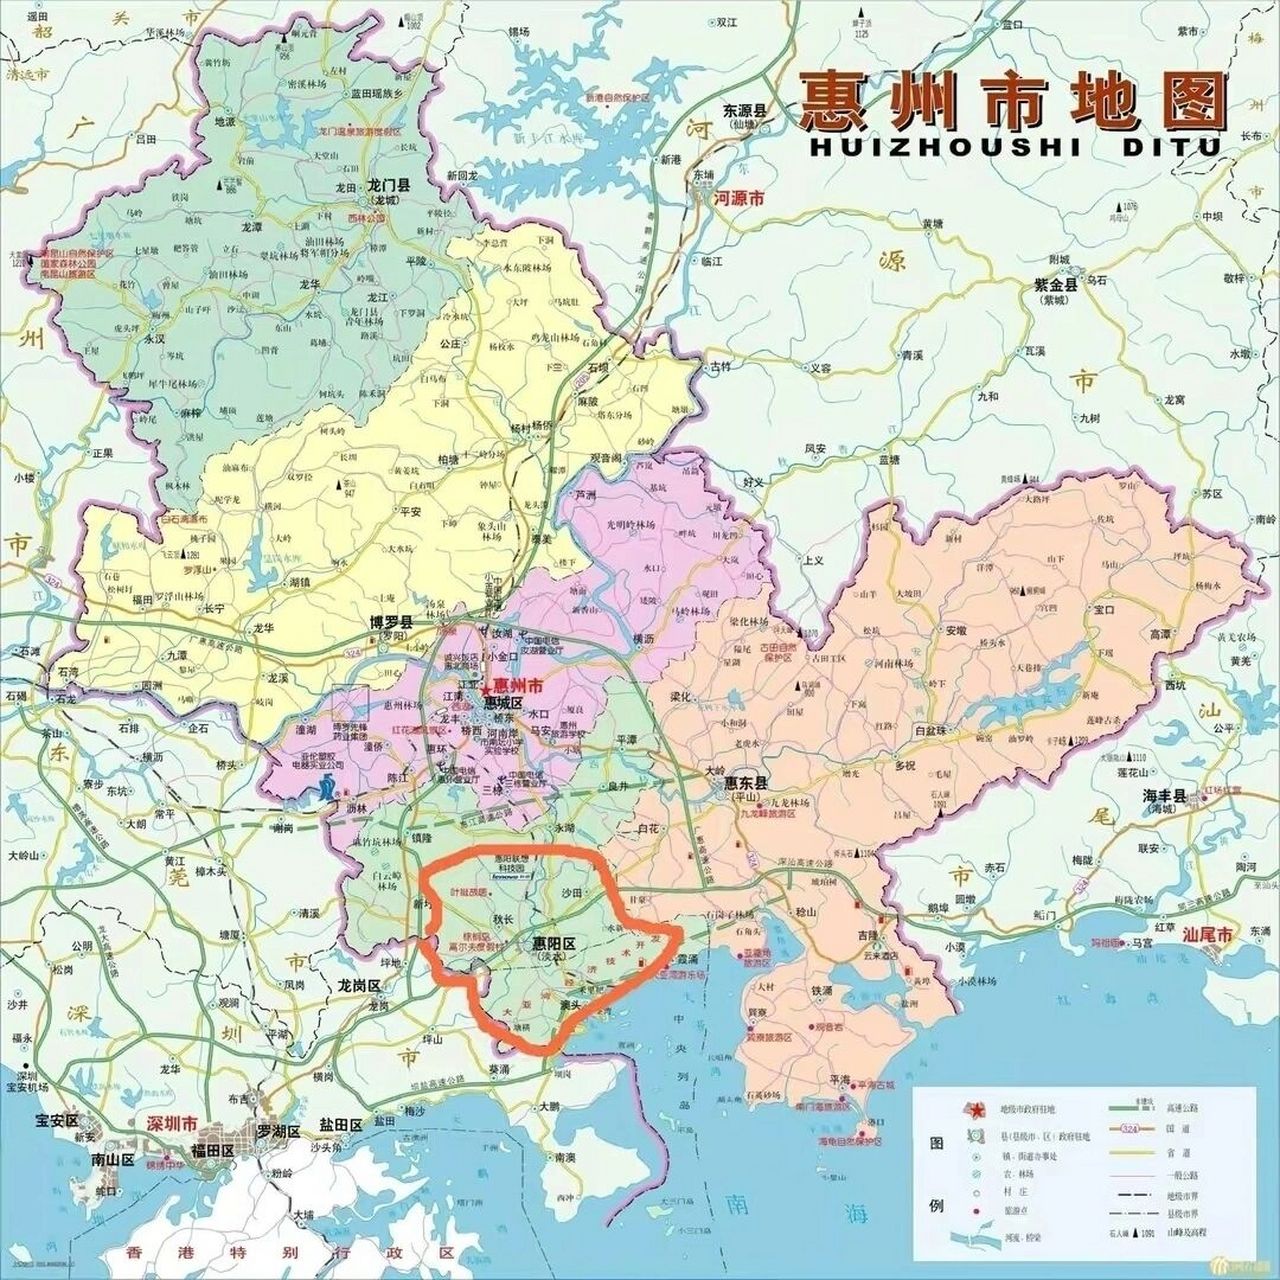 惠州区域解析,让你一目了然,不迷路 惠州区域很大,分以下几个区域有